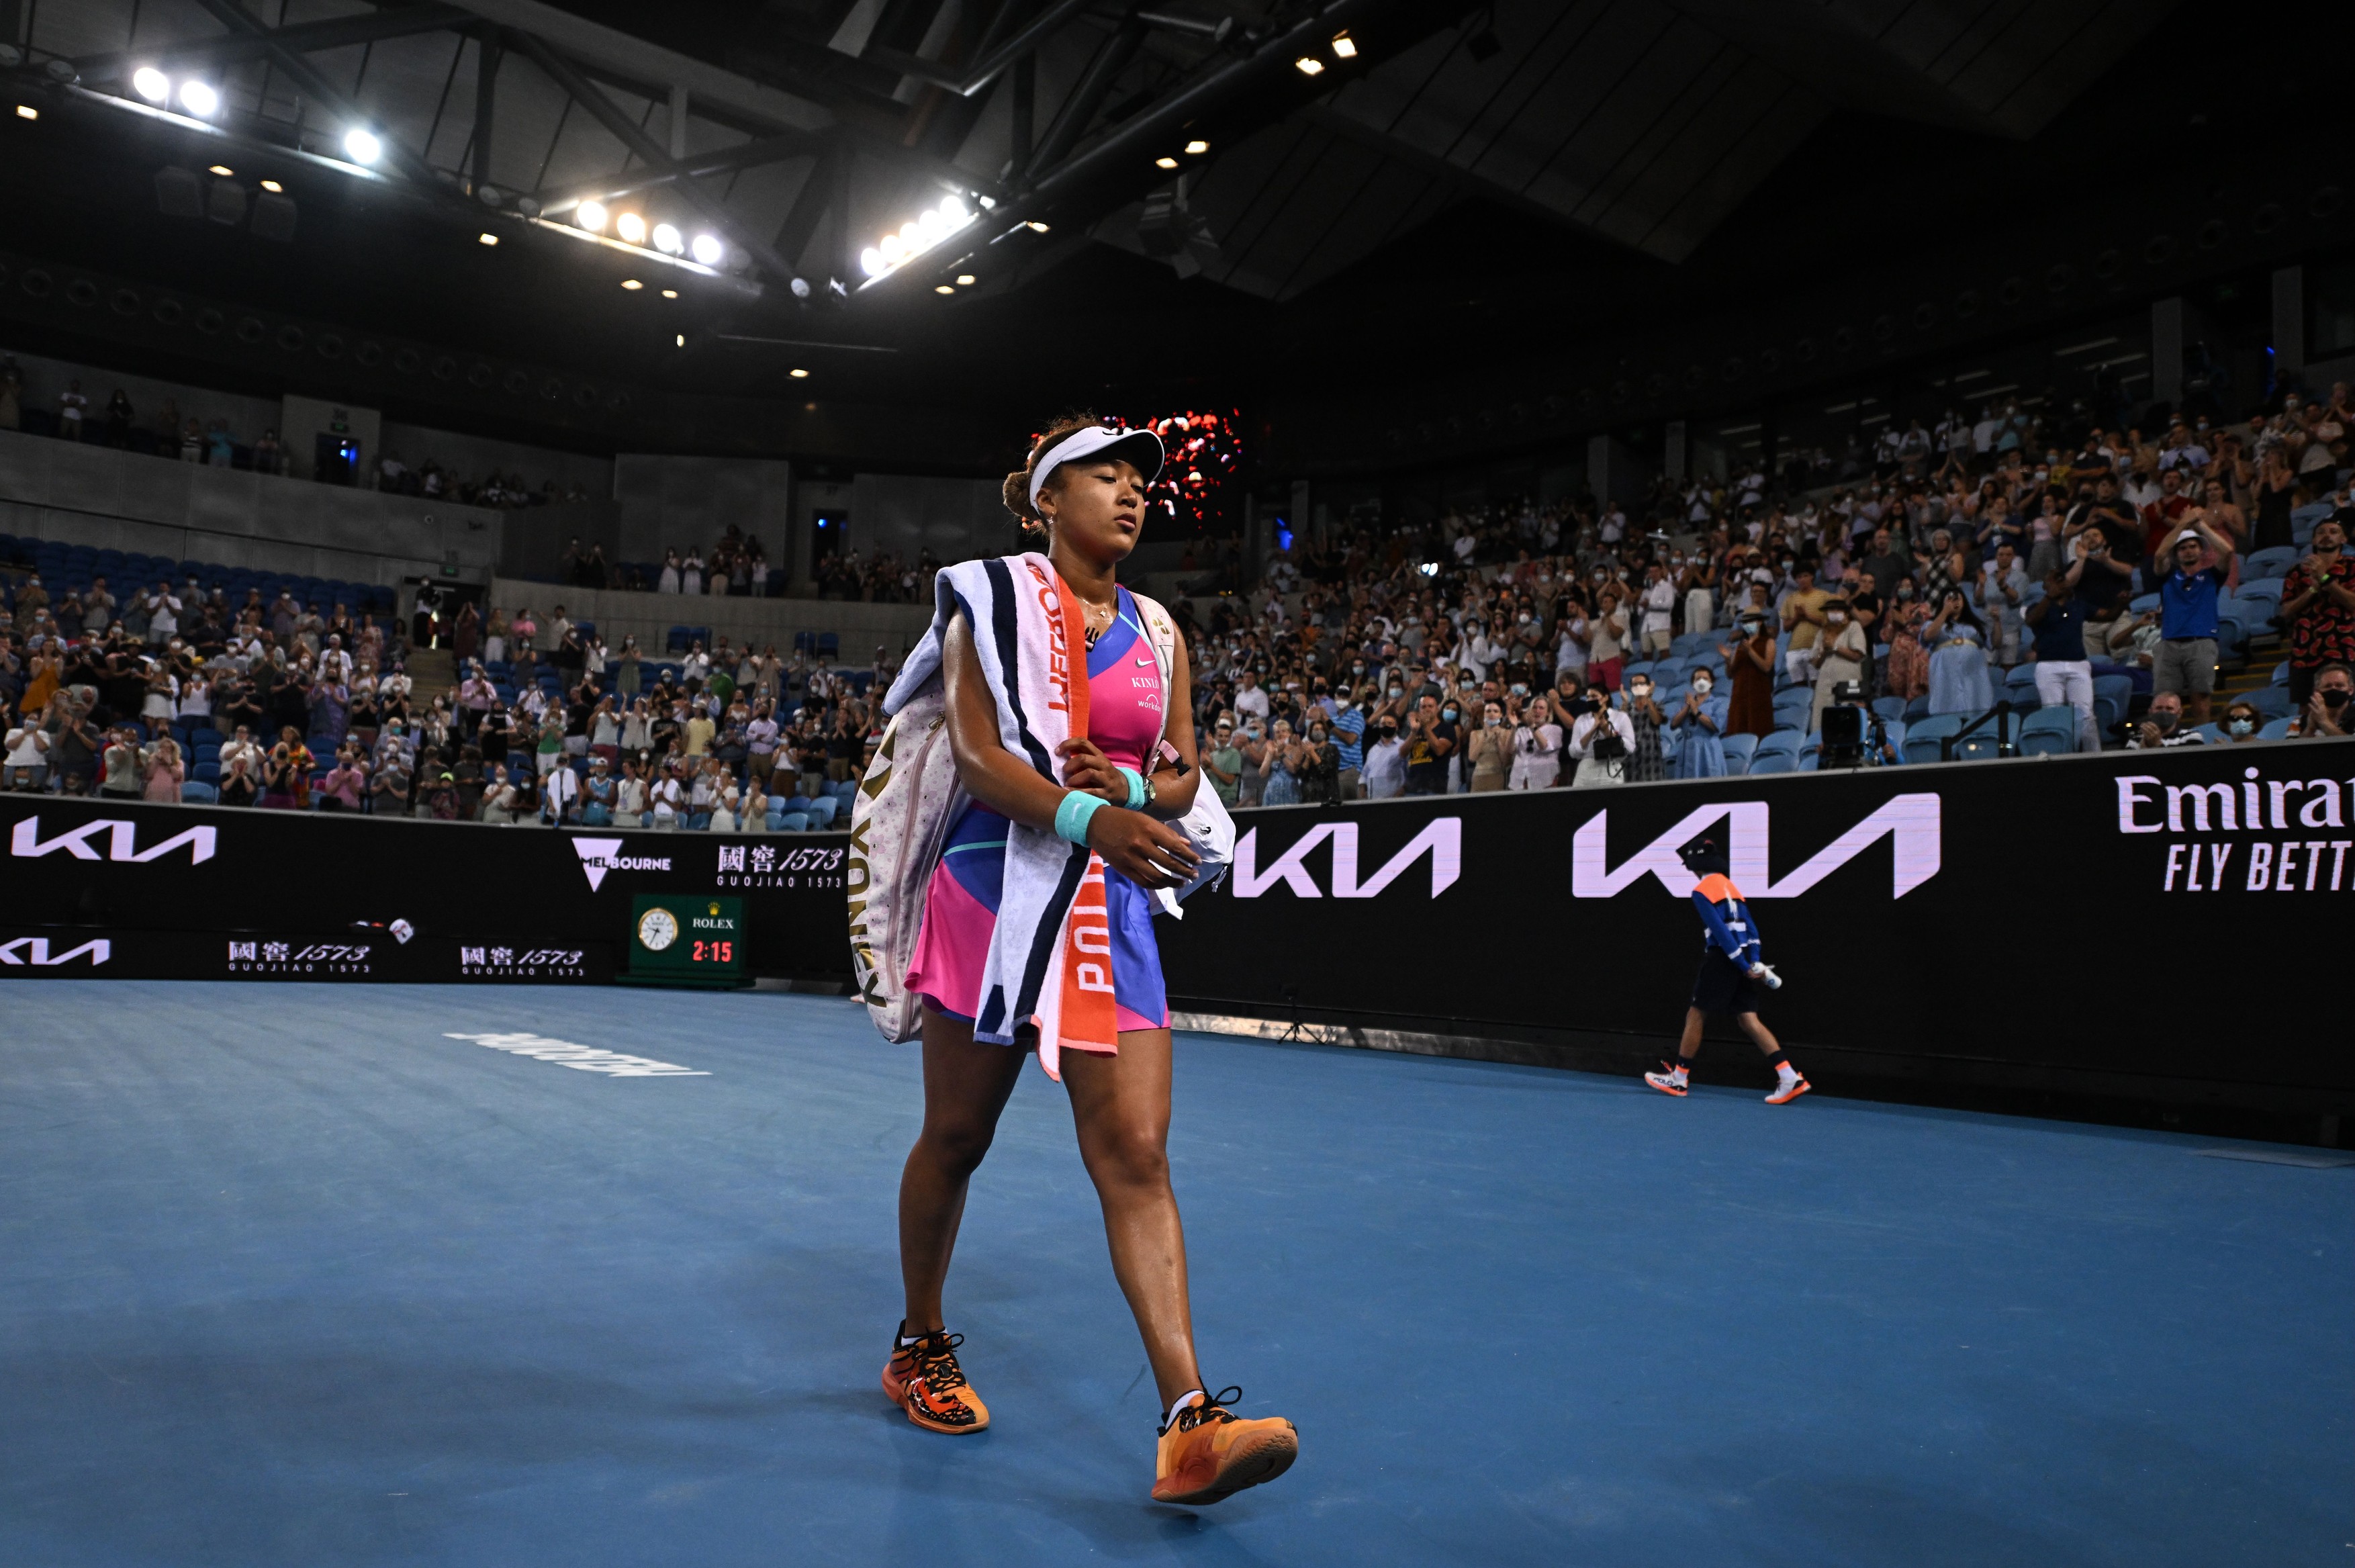 ”E cel mai mare pas pentru mine”. Naomi Osaka a surprins după înfrângerea cu Amanda Anisimova de la Australian Open